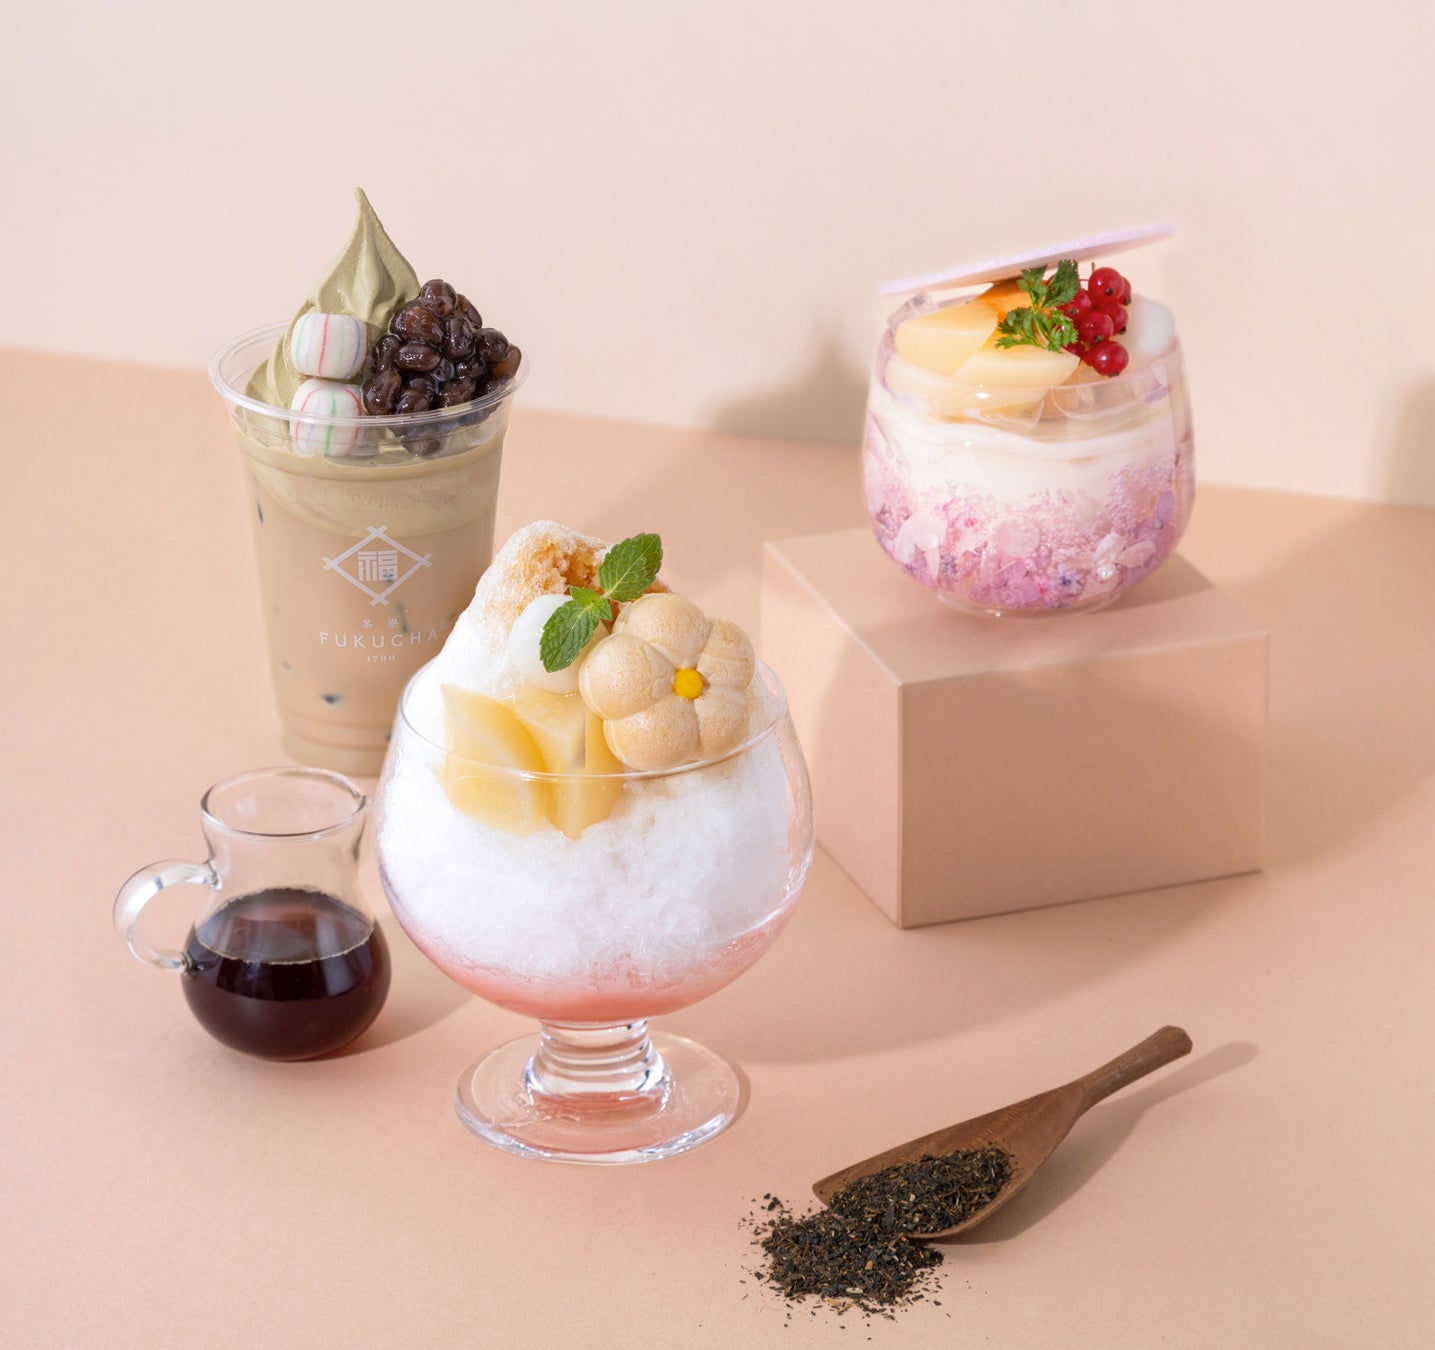 イオン札幌平岡店で催事開催、「おうちでご飯とスイーツ」に大人気の2ブランドが出店